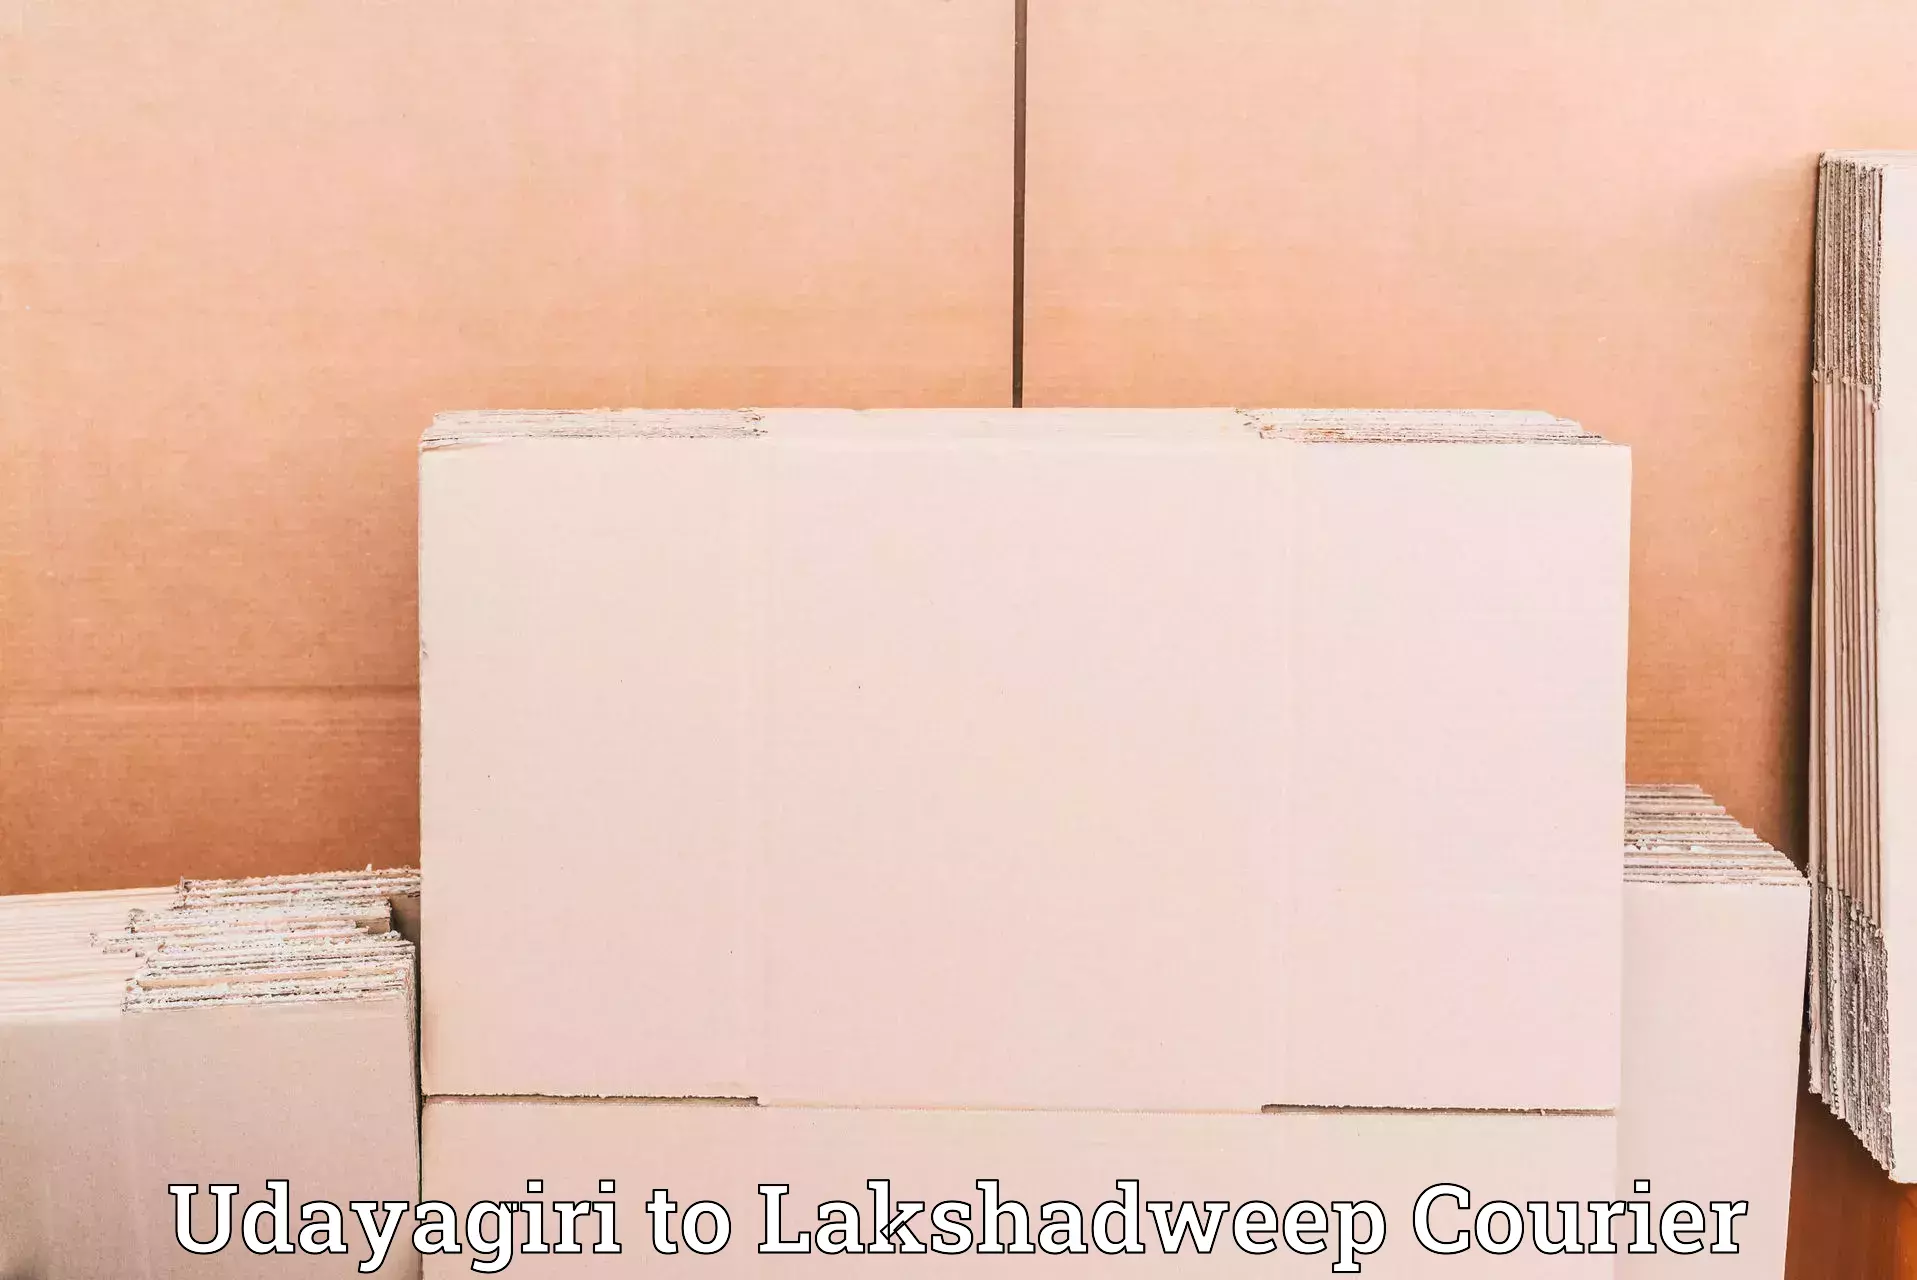 Specialized shipment handling Udayagiri to Lakshadweep